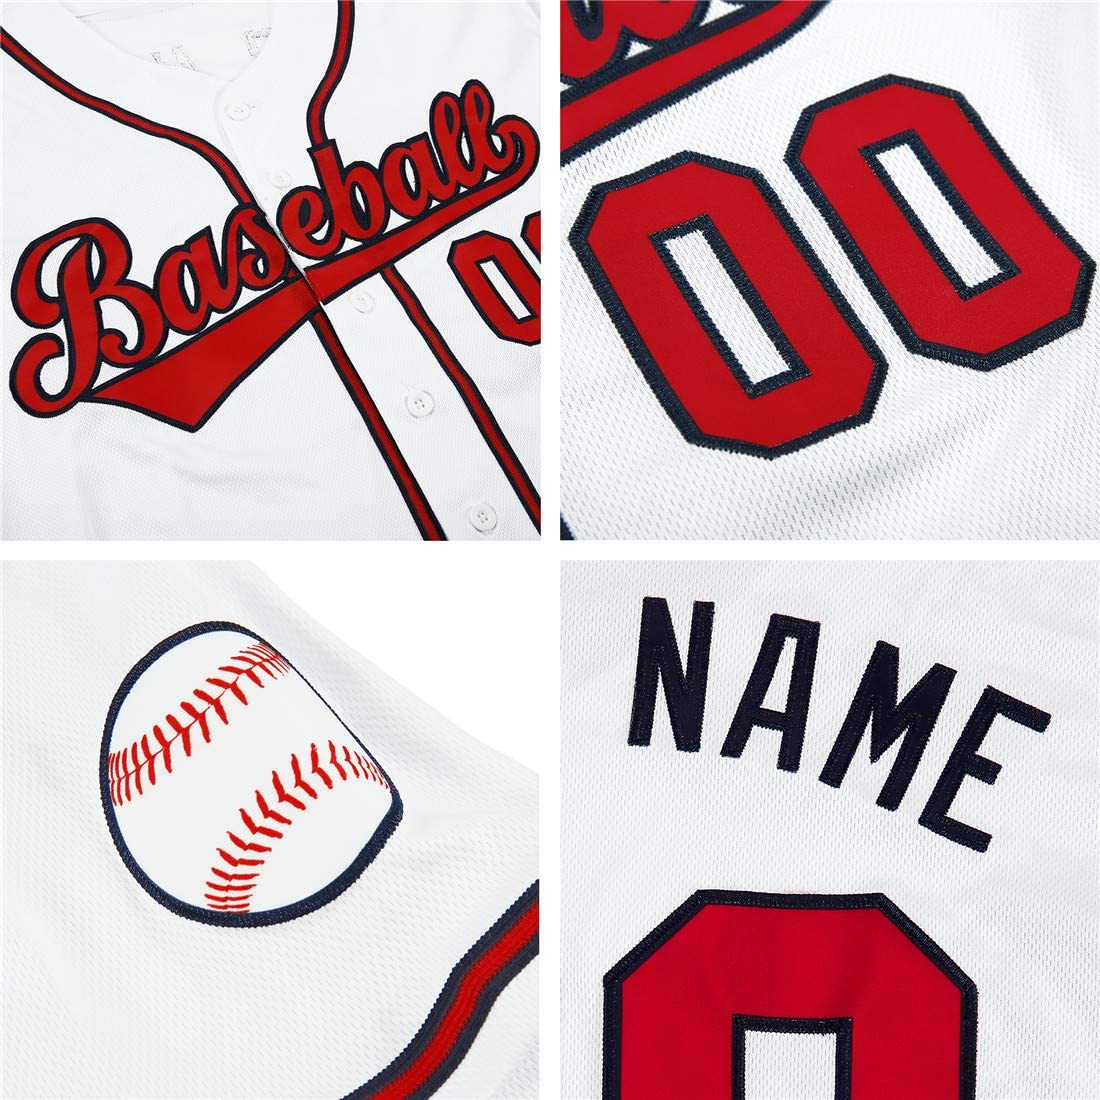 Camisa de beisebol autêntica branca personalizada vermelho-marinho